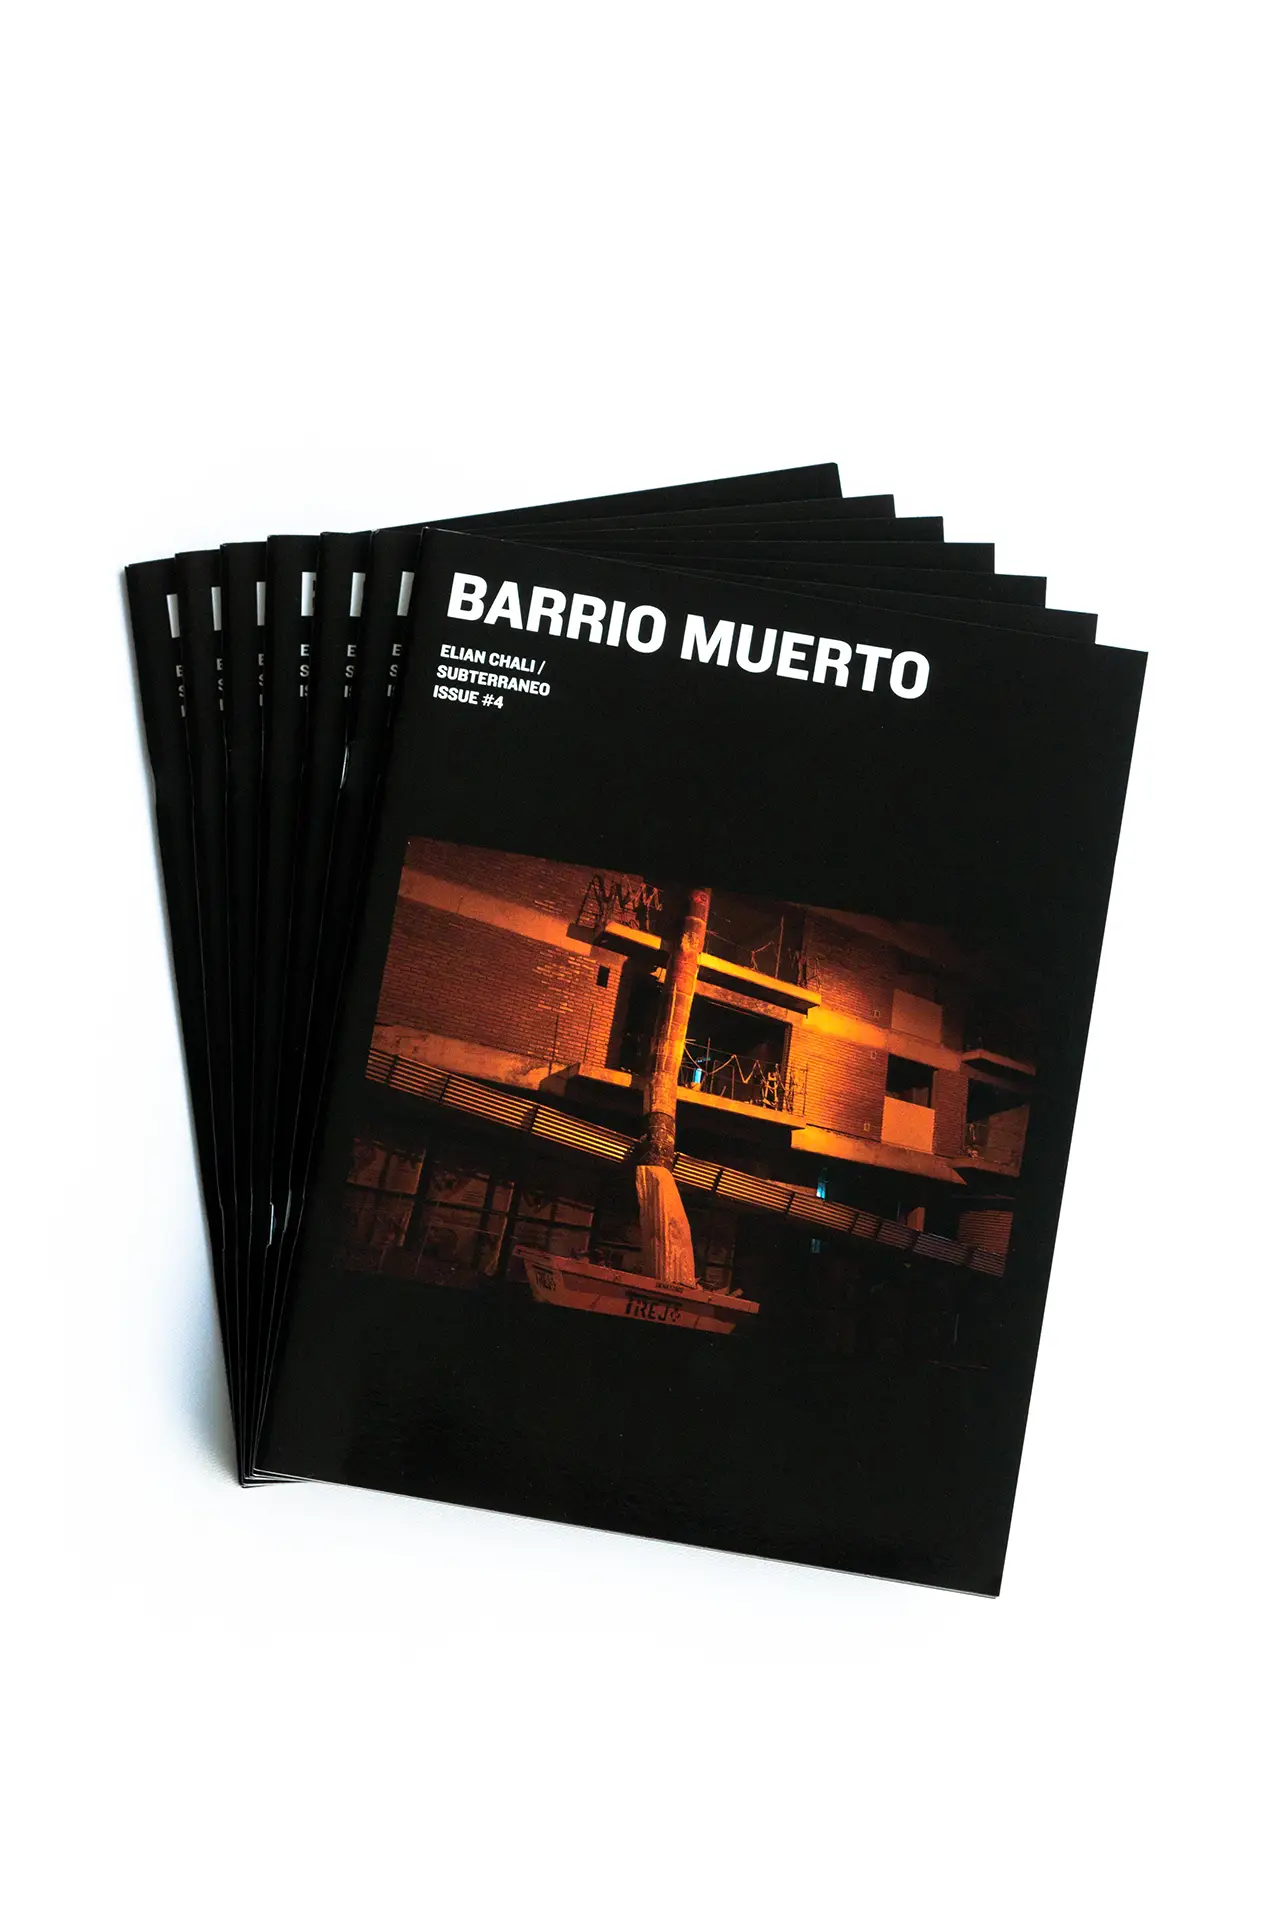 issue #4 | ELIAN CHALI | BARRIO MUERTO Cargando imagen...